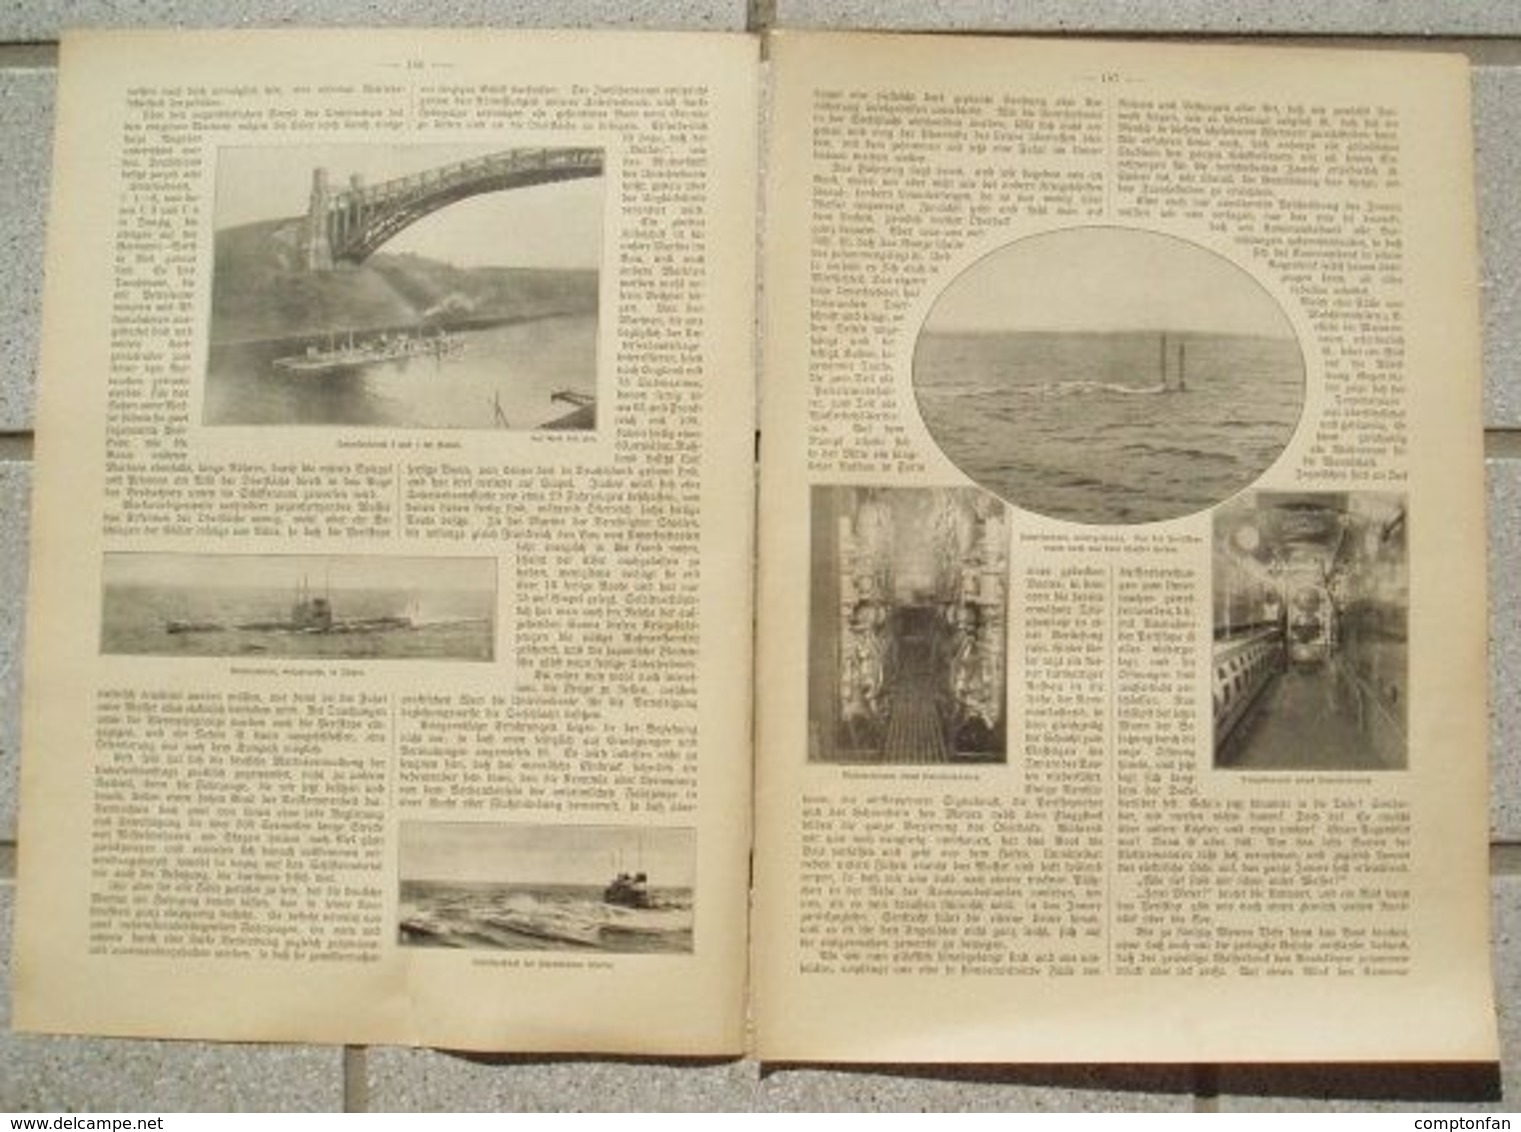 A102 074 Unterseeboote Vulkan Werft Bremen Artikel Mit 10 Bildern Von 1911 !! - Boats